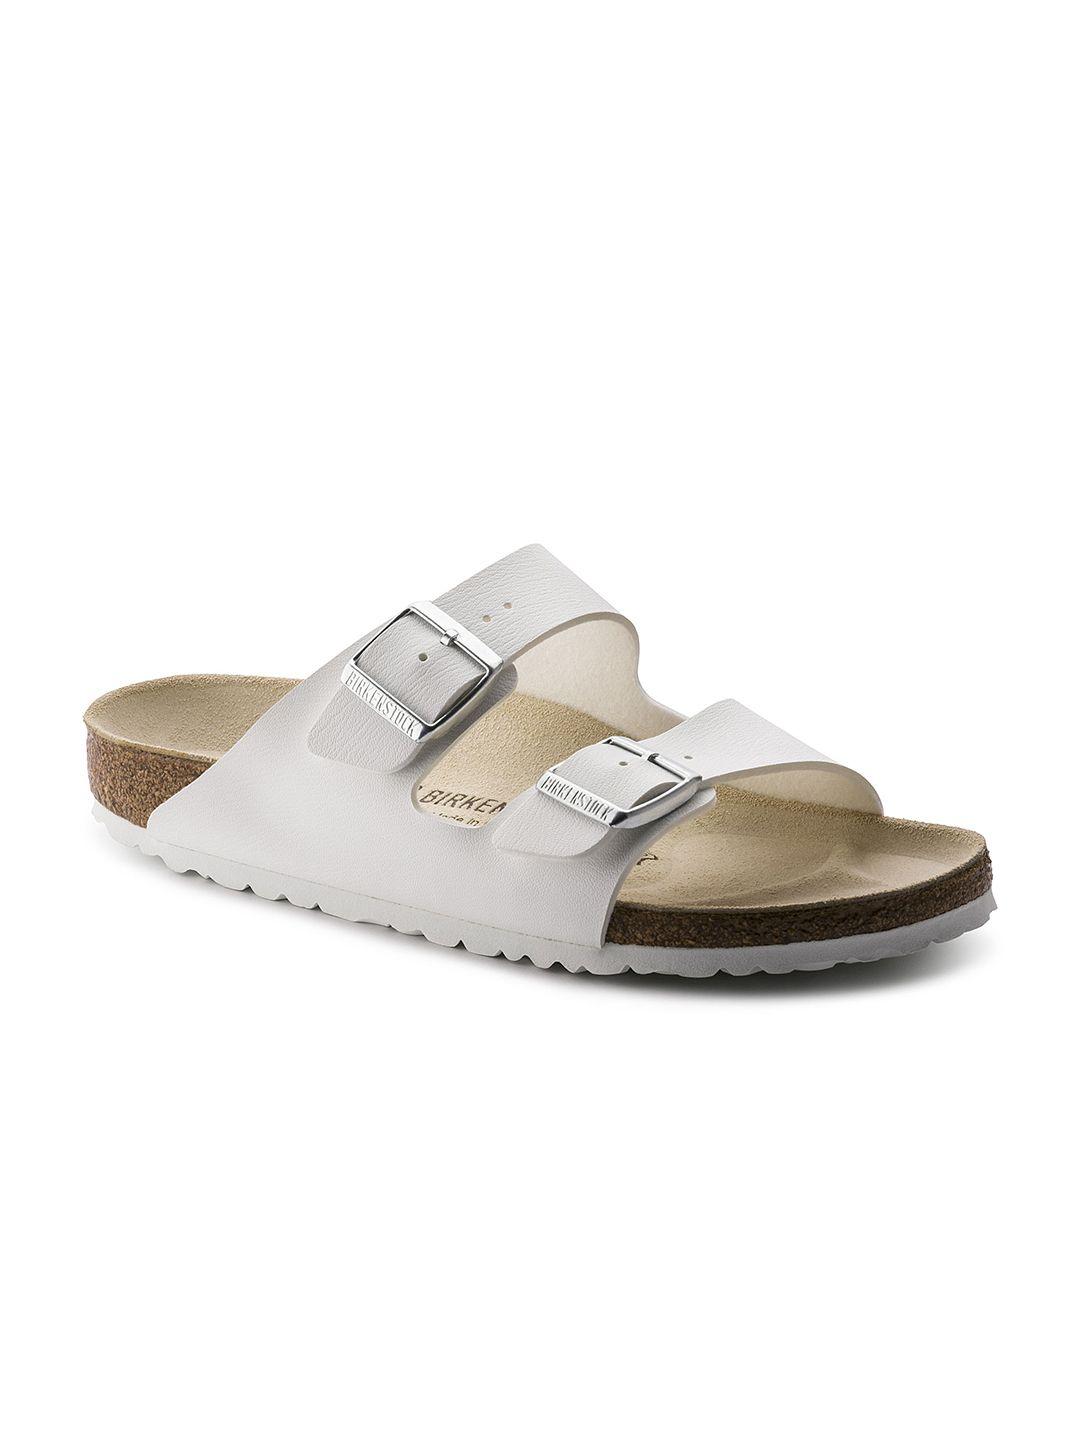 birkenstock unisex white arizona birko-flor narrow width sandals